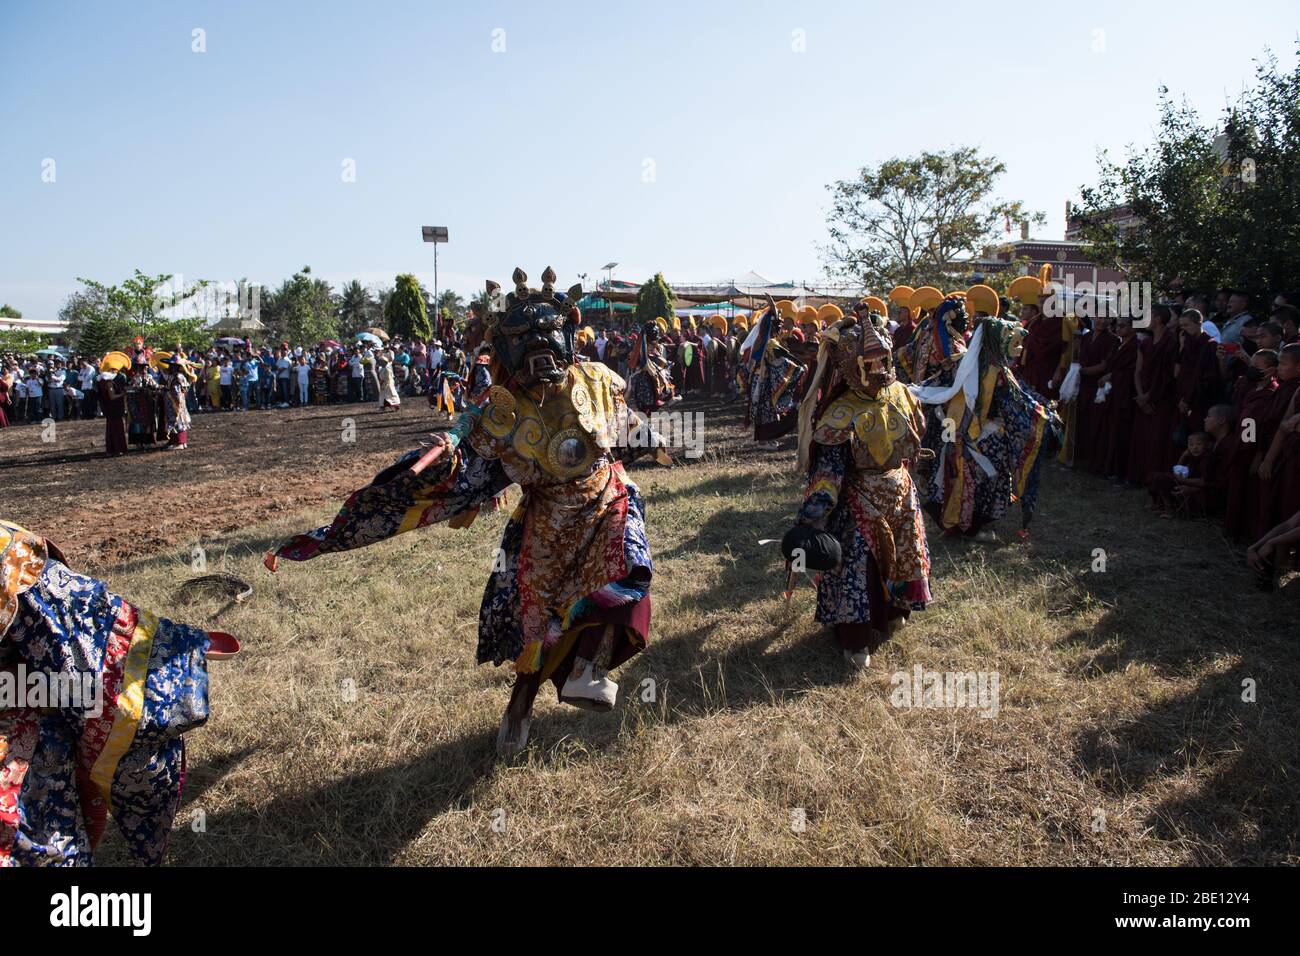 Danse Cham avec masques de moines tibétains pendant le Losar (nouvel an tibétain) dans la colonie tibétaine de Gurupura, Karnataka, Inde du Sud. Banque D'Images